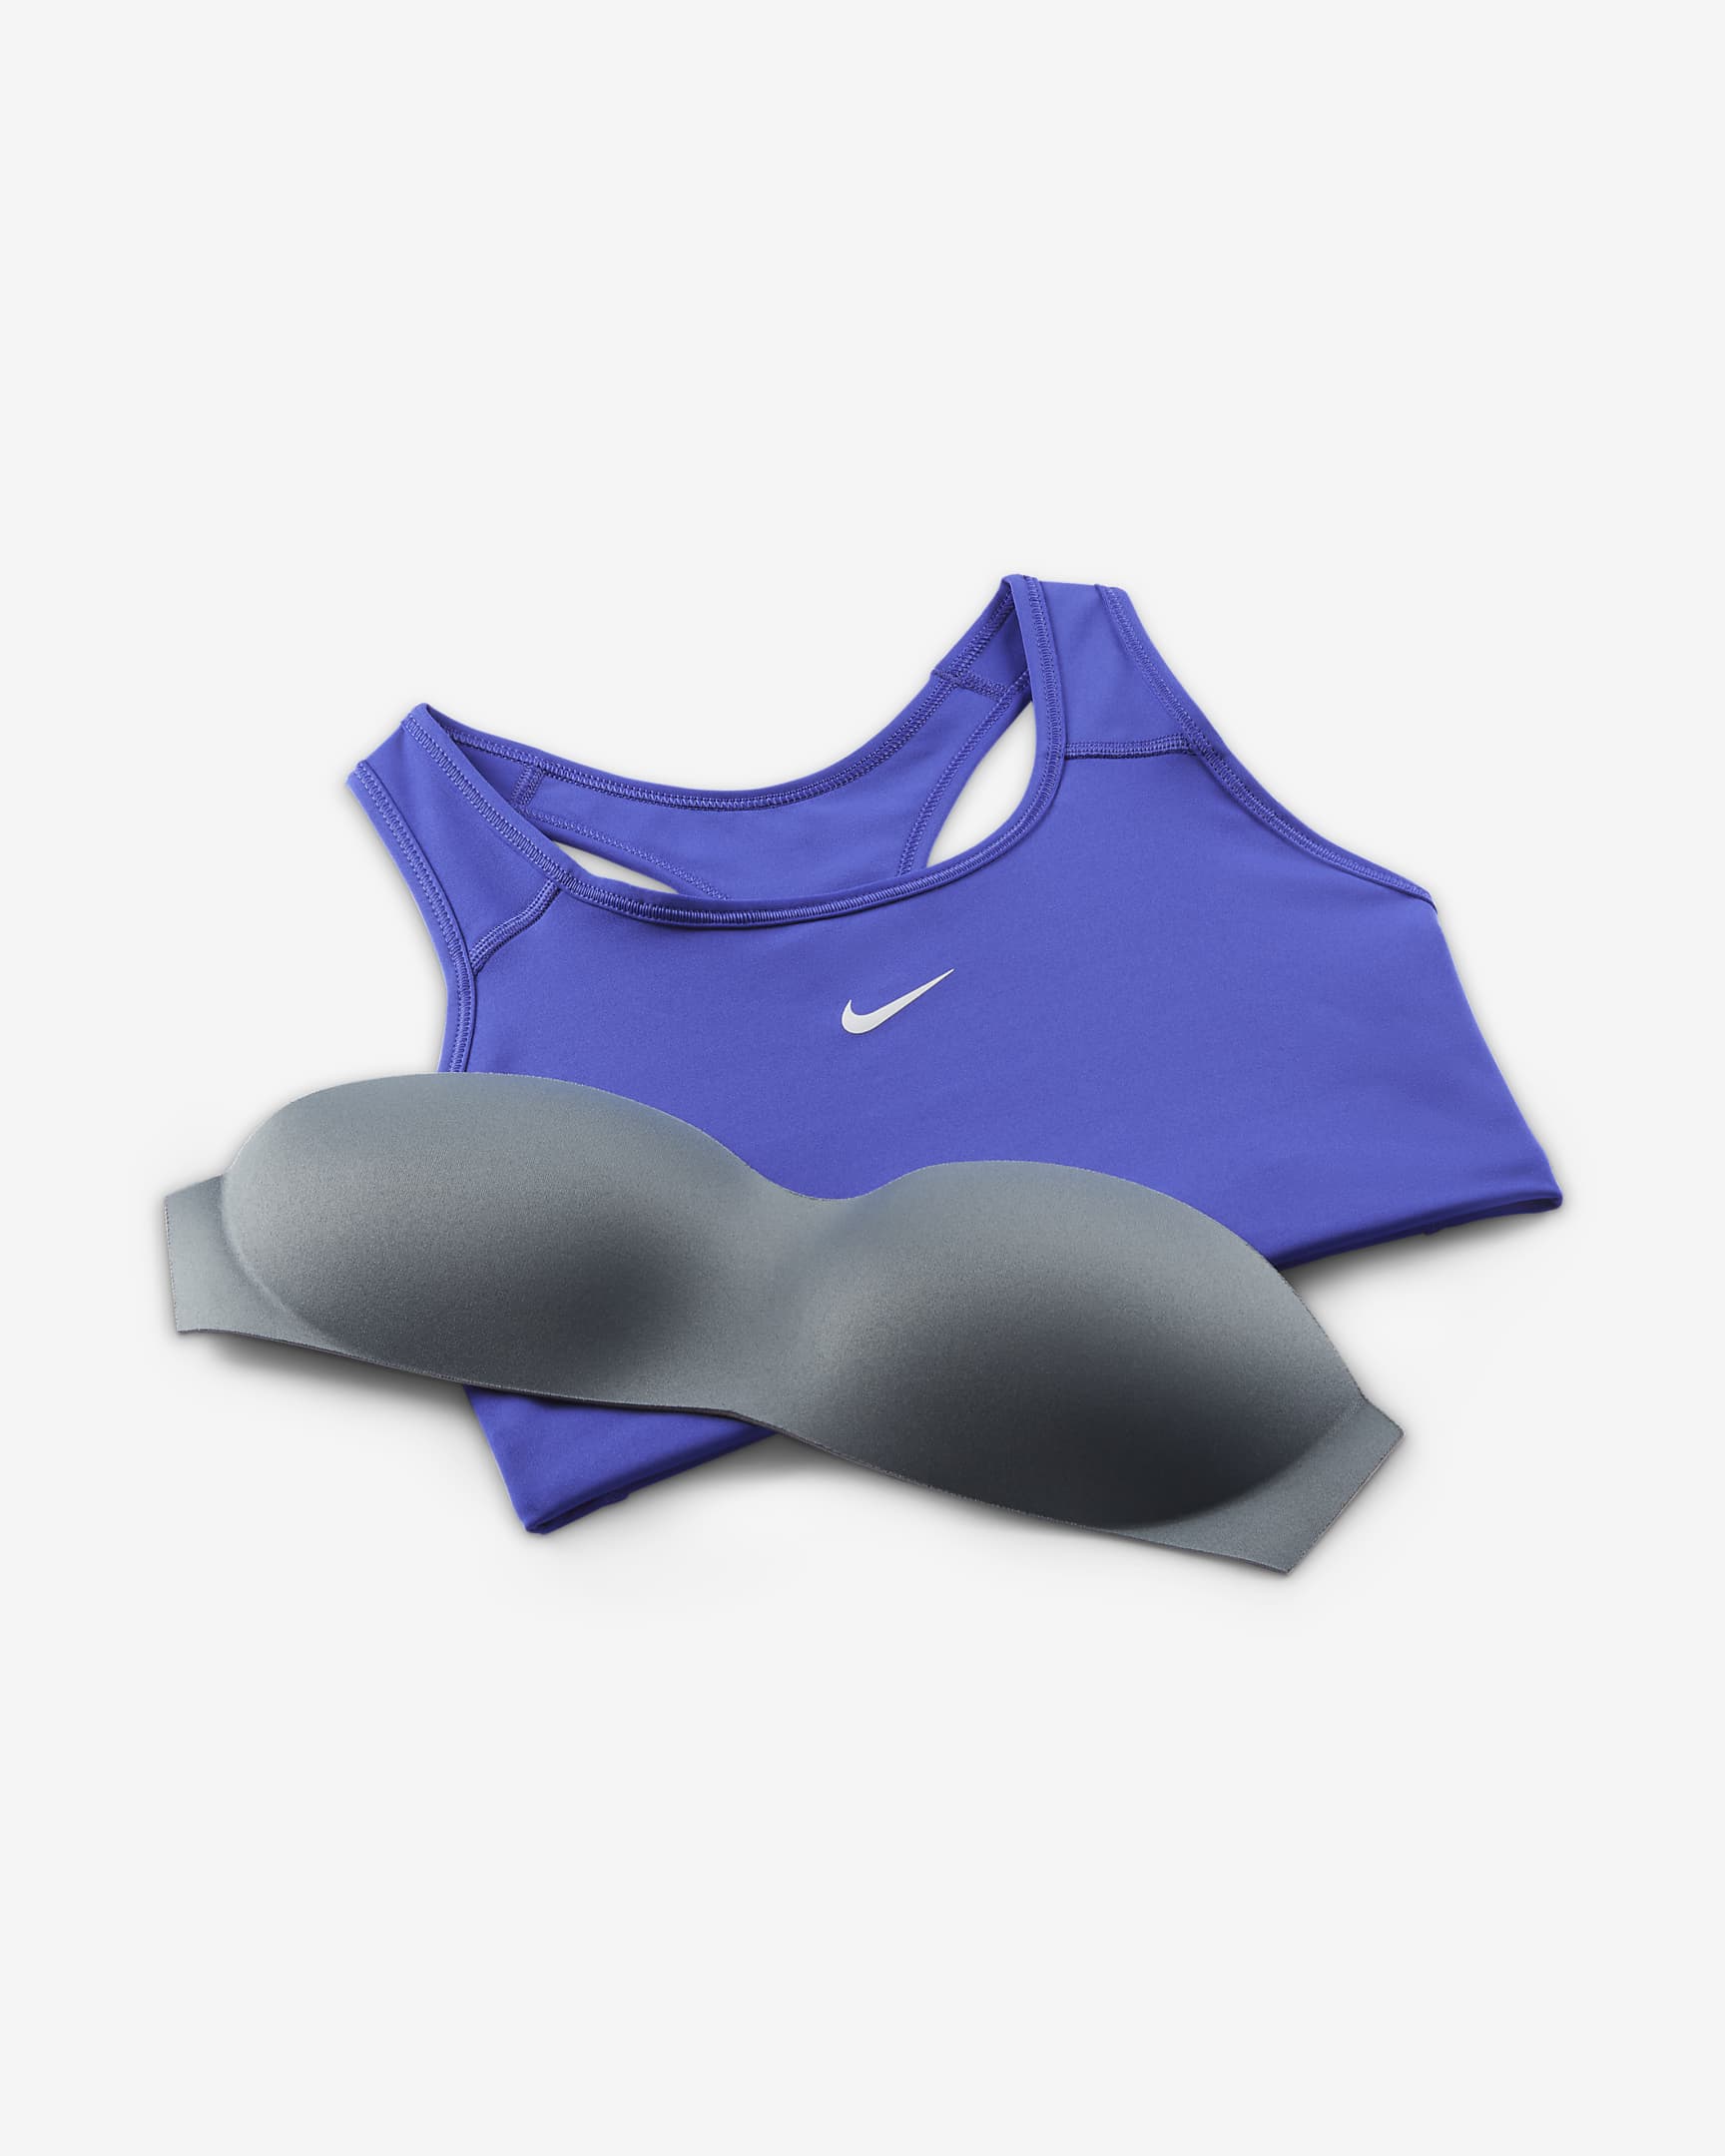 Blue Nike Womens Swoosh Medium Support 1 Piece Pad Sports Bra